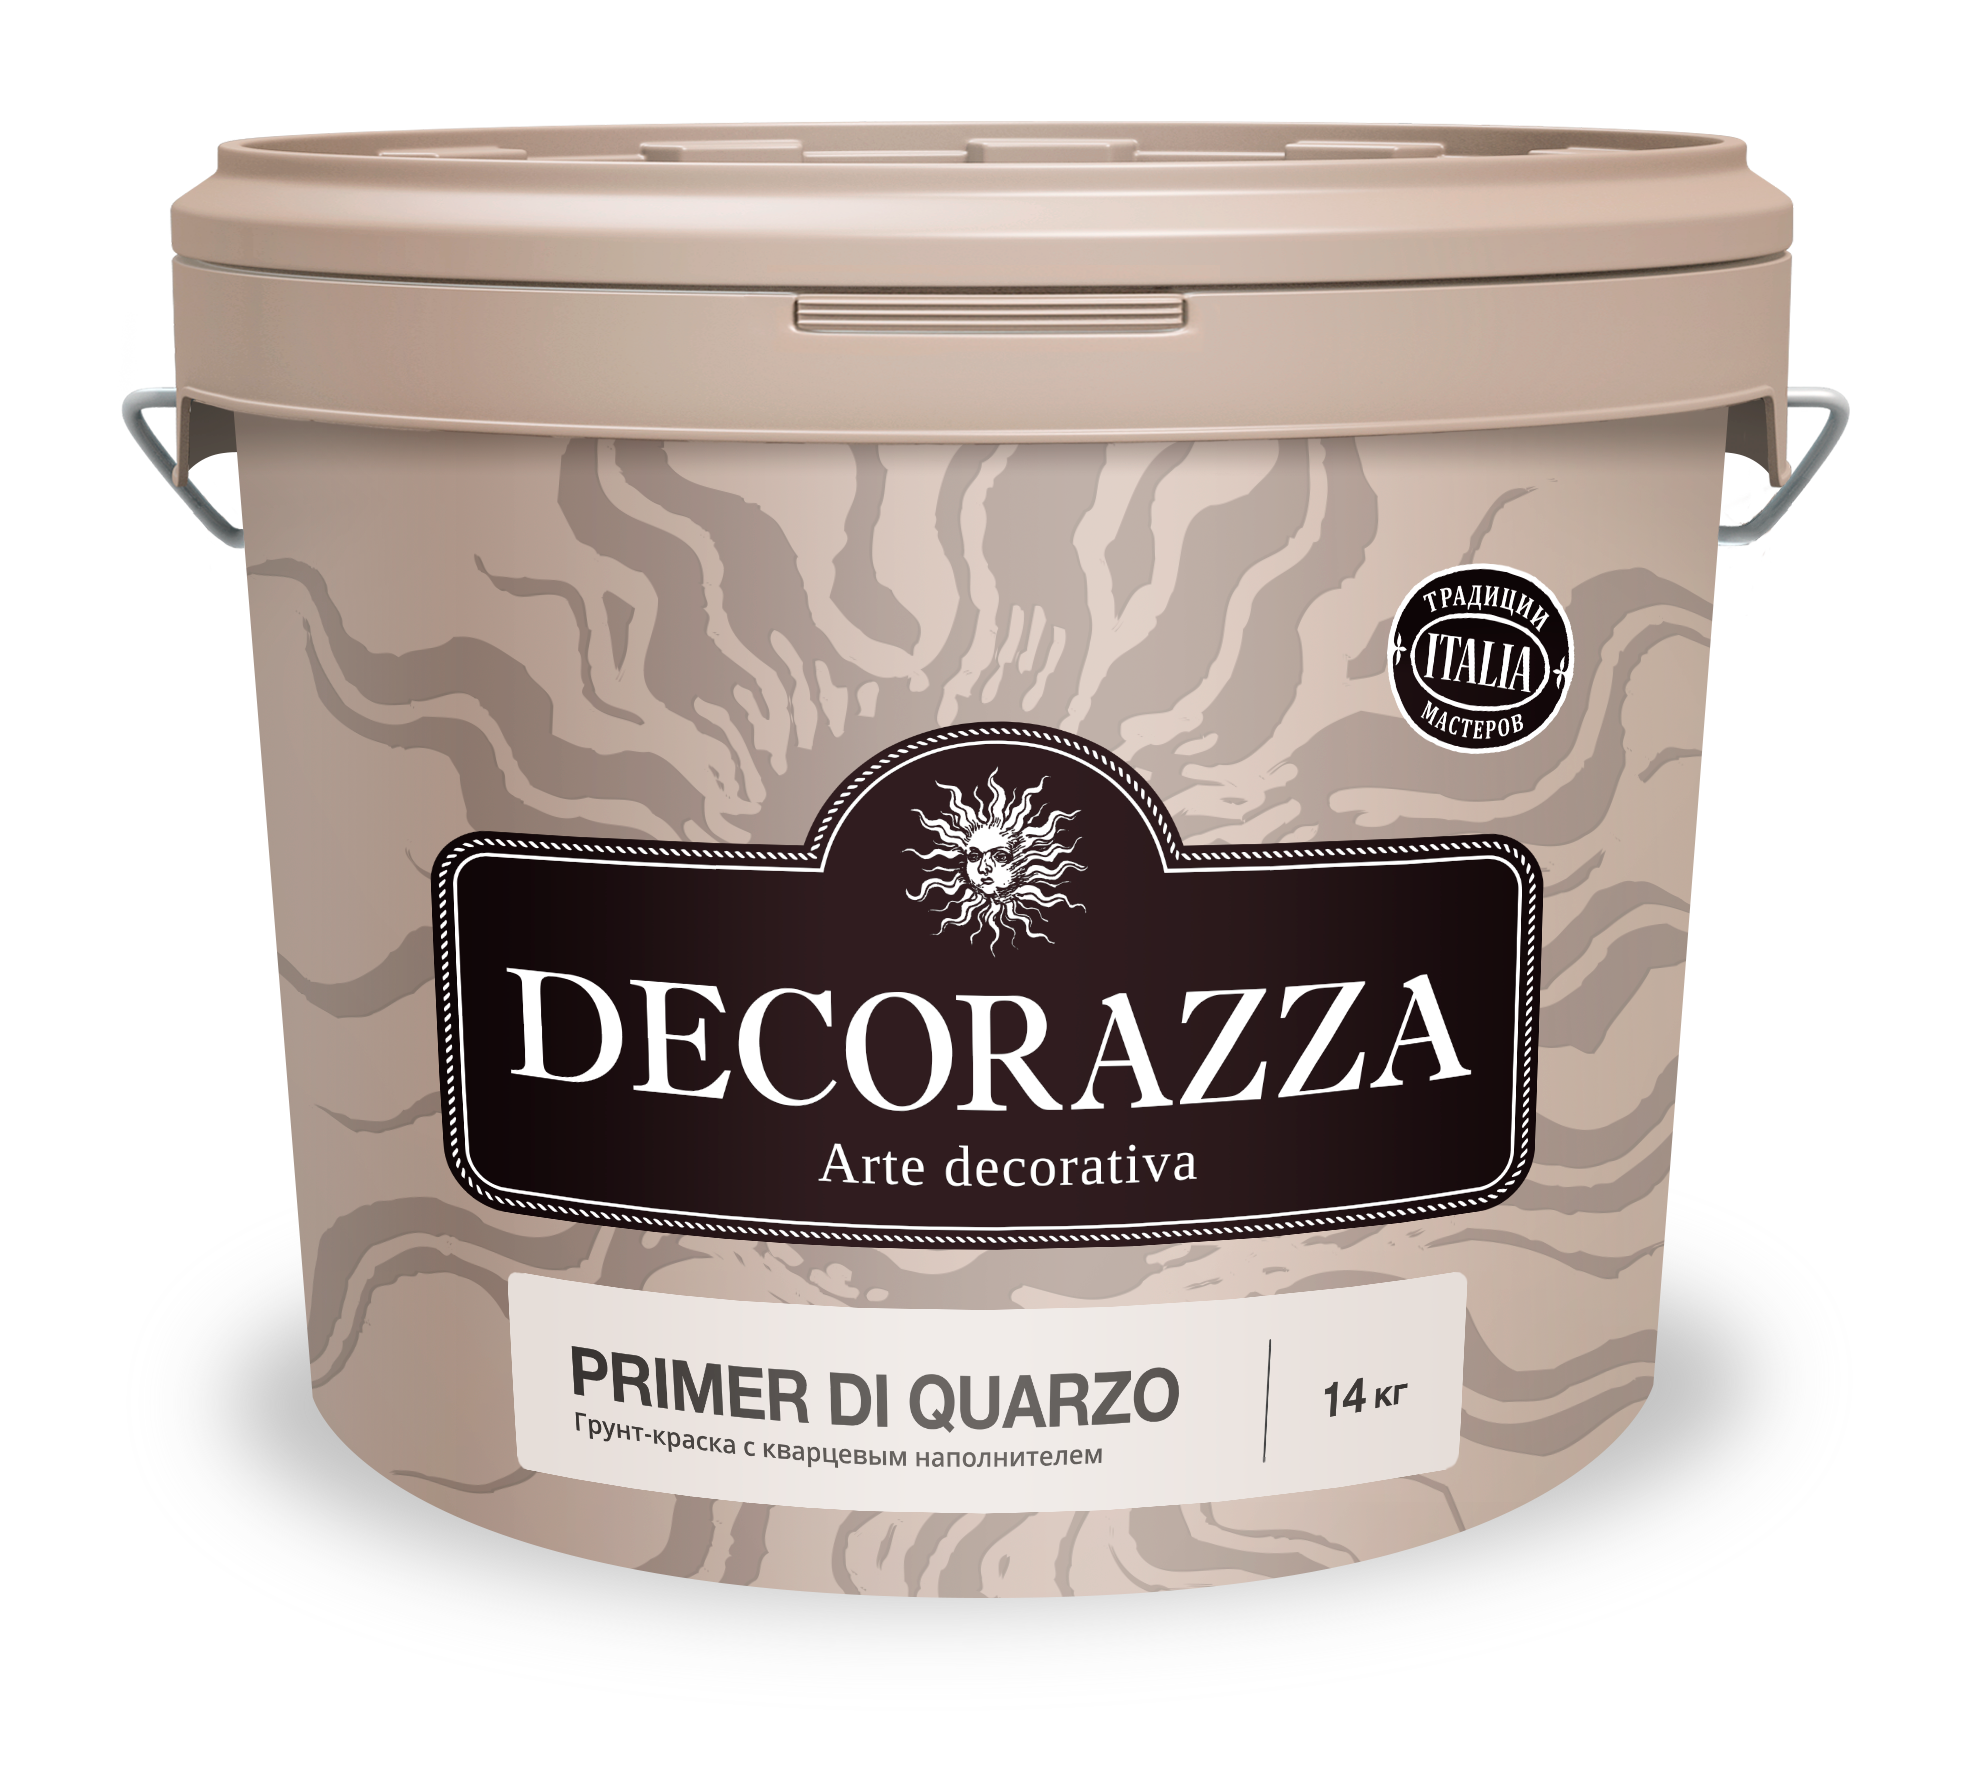 Грунт подготовительный , Decorazza Primer di Quarzo, 14 кг грунт olsta глубокого проникновения primer silicone 10 л